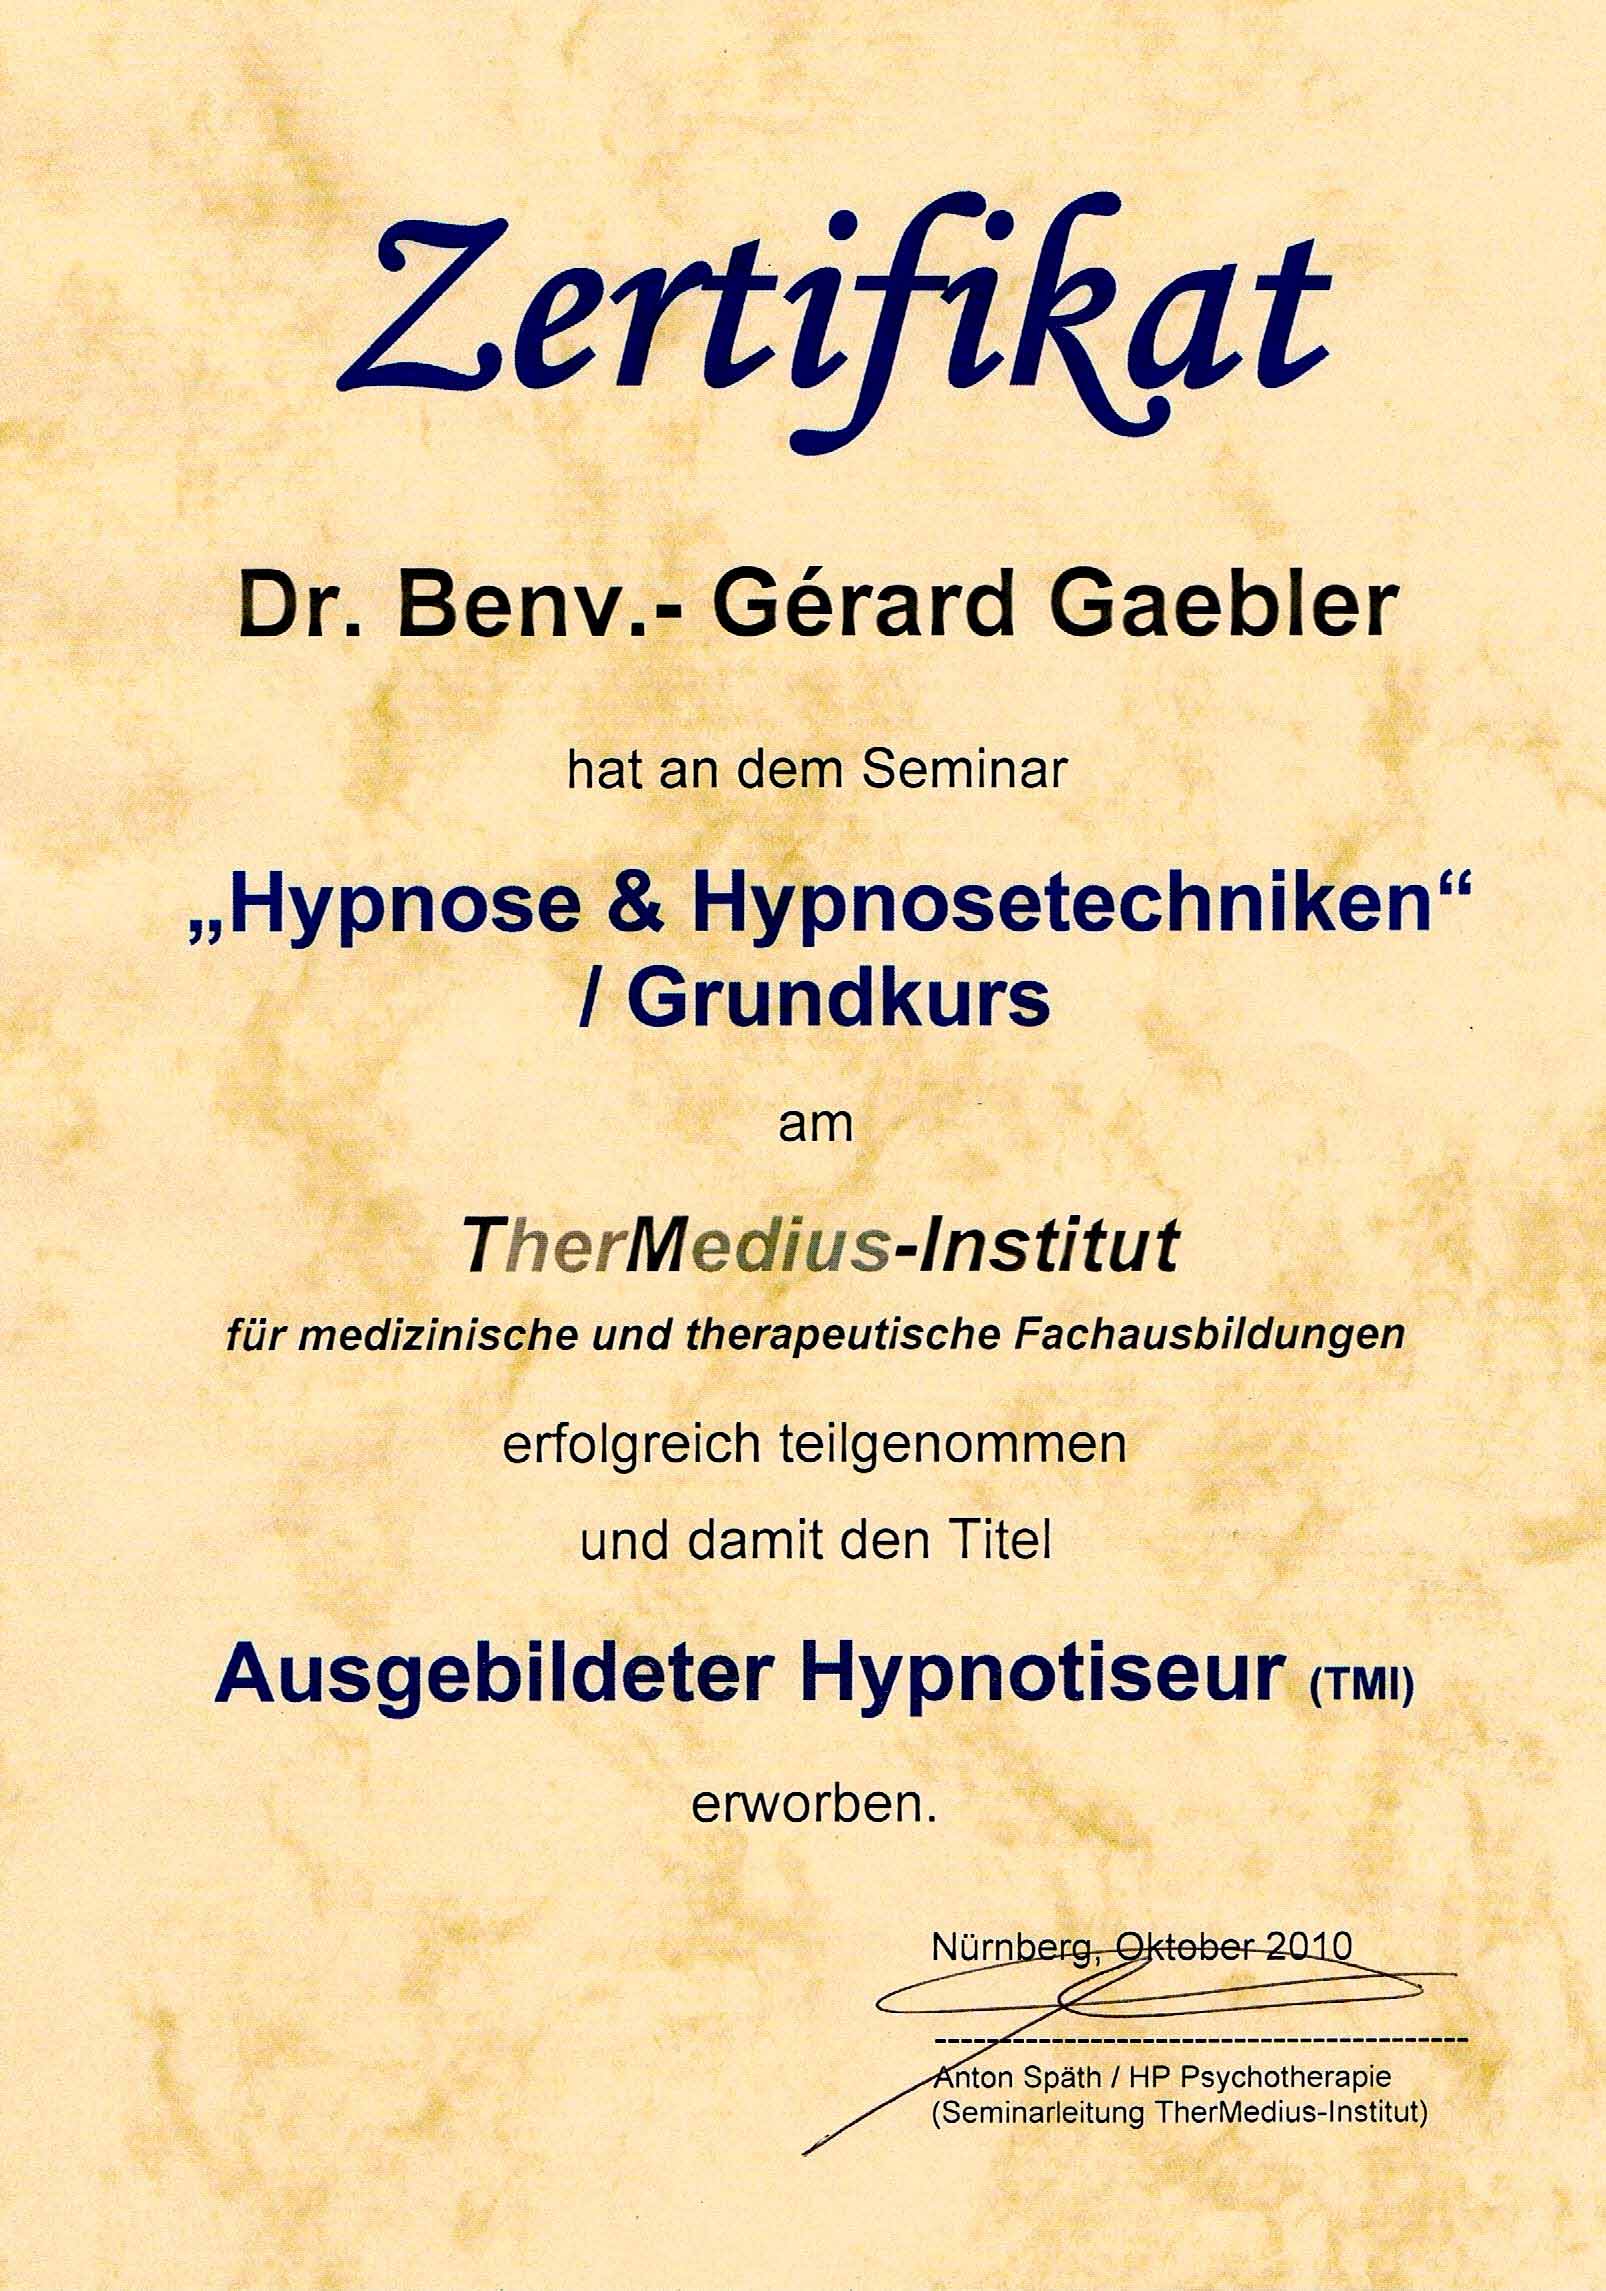 Zertifikat Ausgebildeter Hypnotiseur